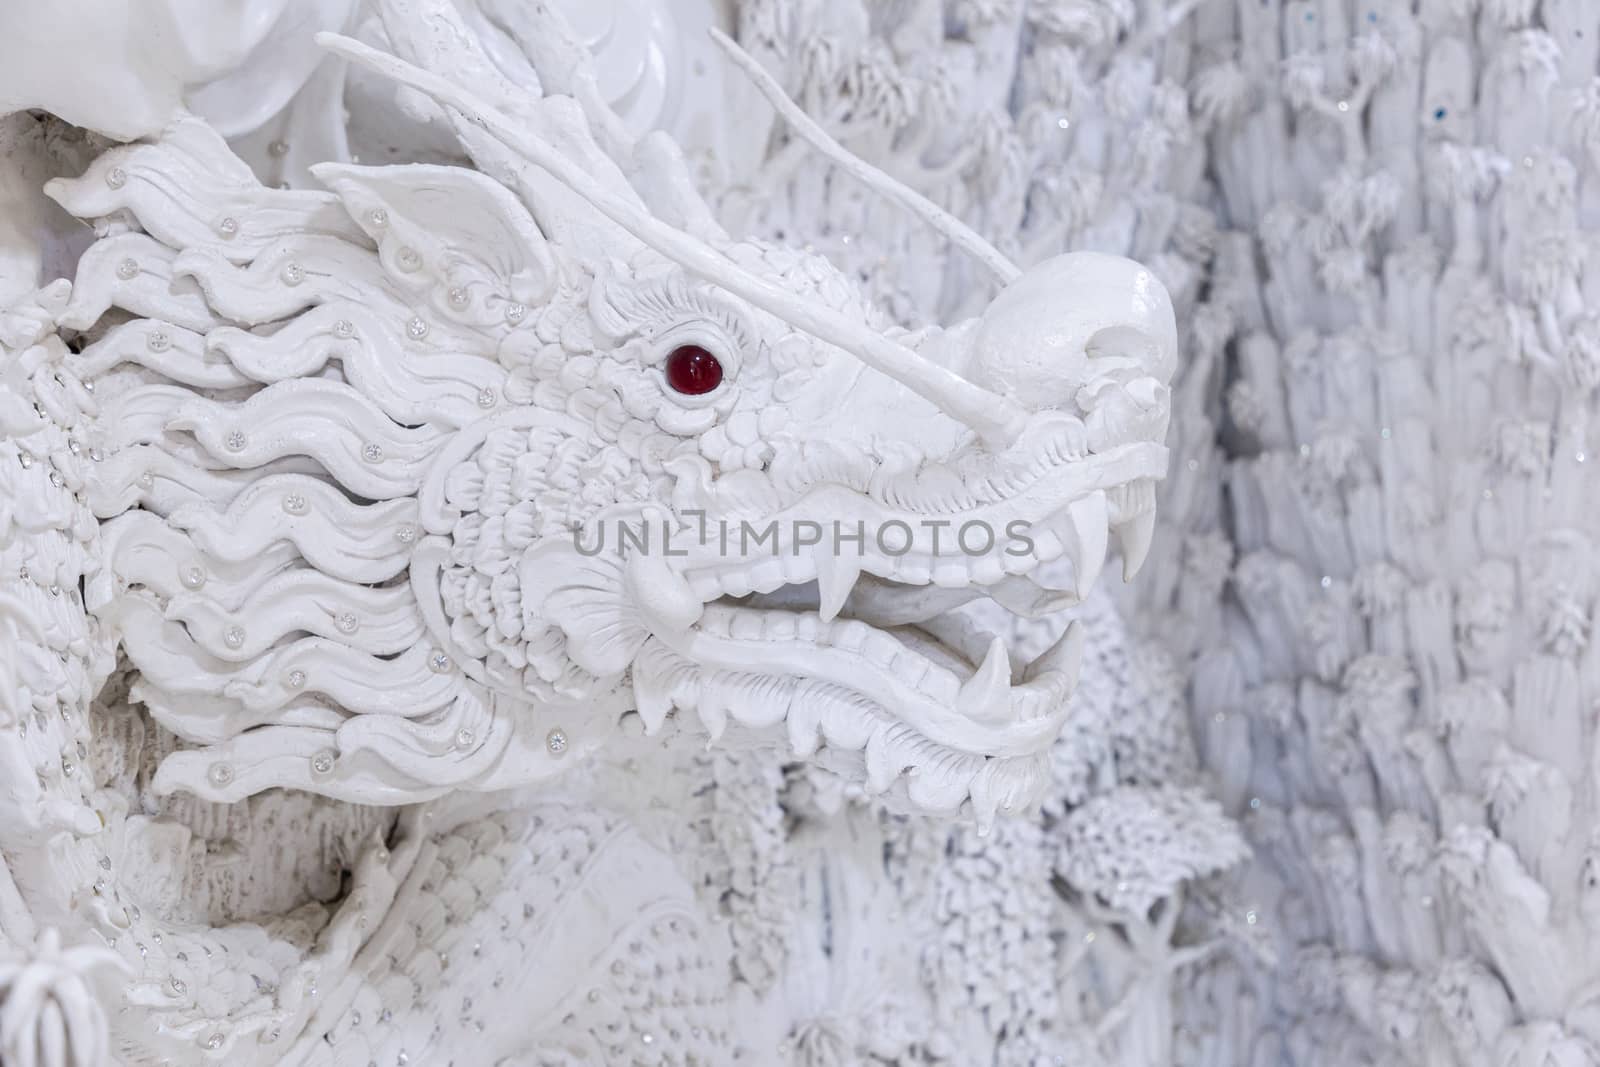 Beautiful White dragon statue at Huay Pla Kang Temple, Chiang Rai, Thailand.